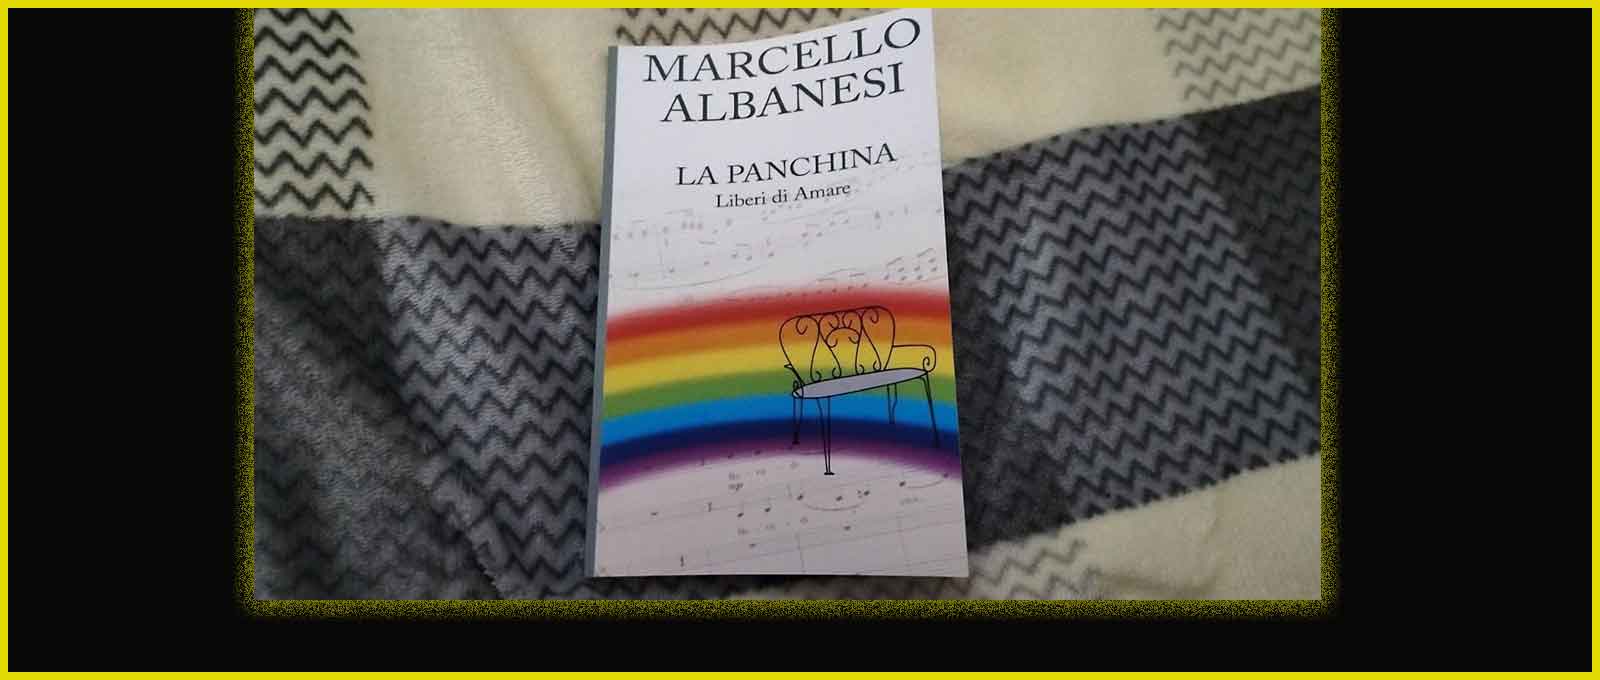 Marcello Albanesi "La panchina. Liberi di Amare".